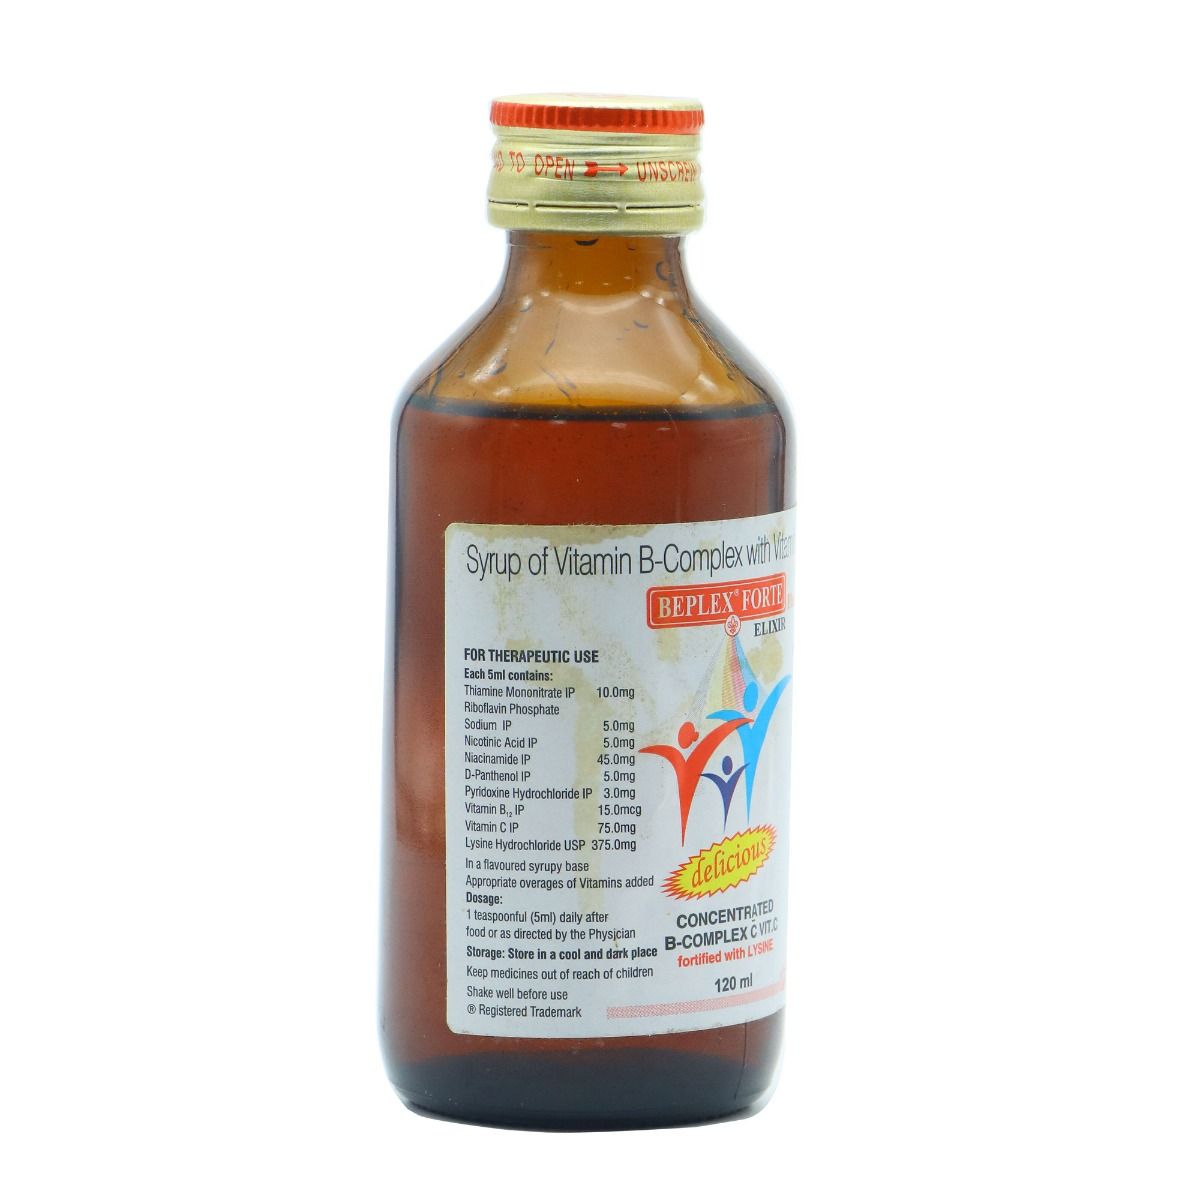 Beplex Forte Plus Elixir 120 ml, Pack of 1 